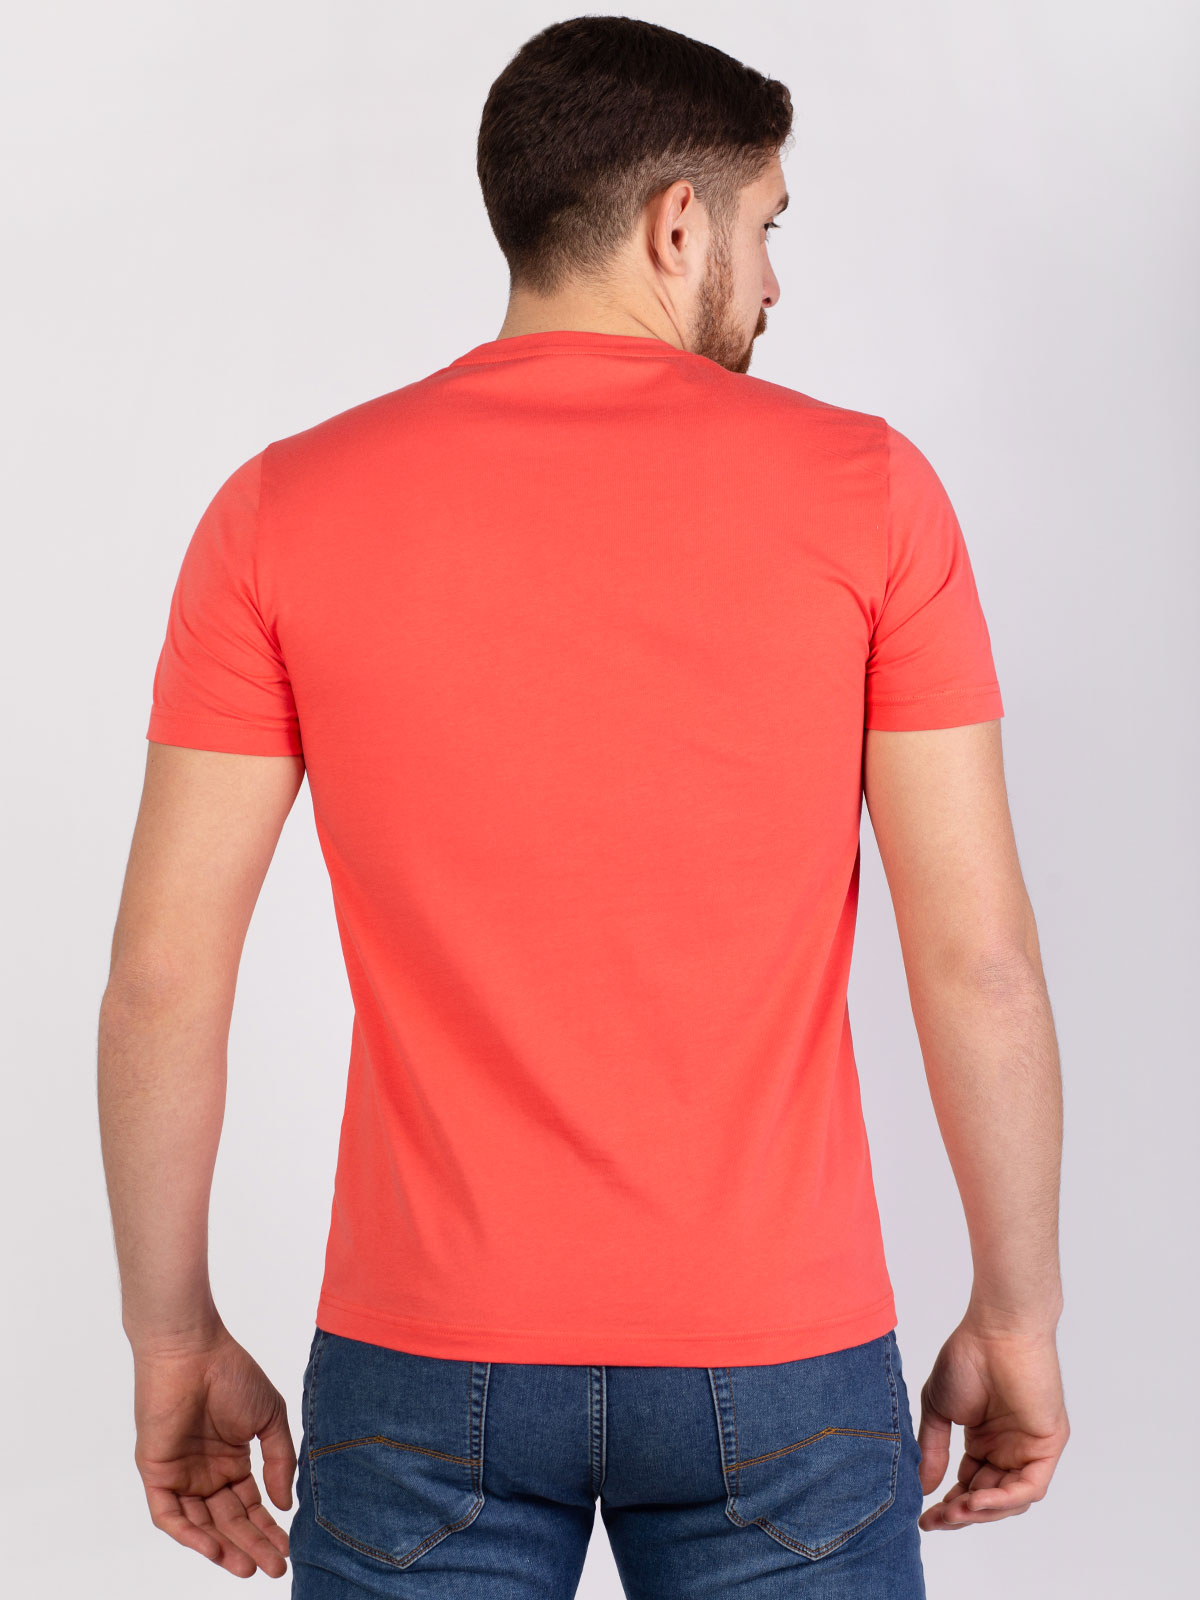 Κοραλί κοντομάνικη μπλούζα με σήμα - 96380 € 11.81 img3